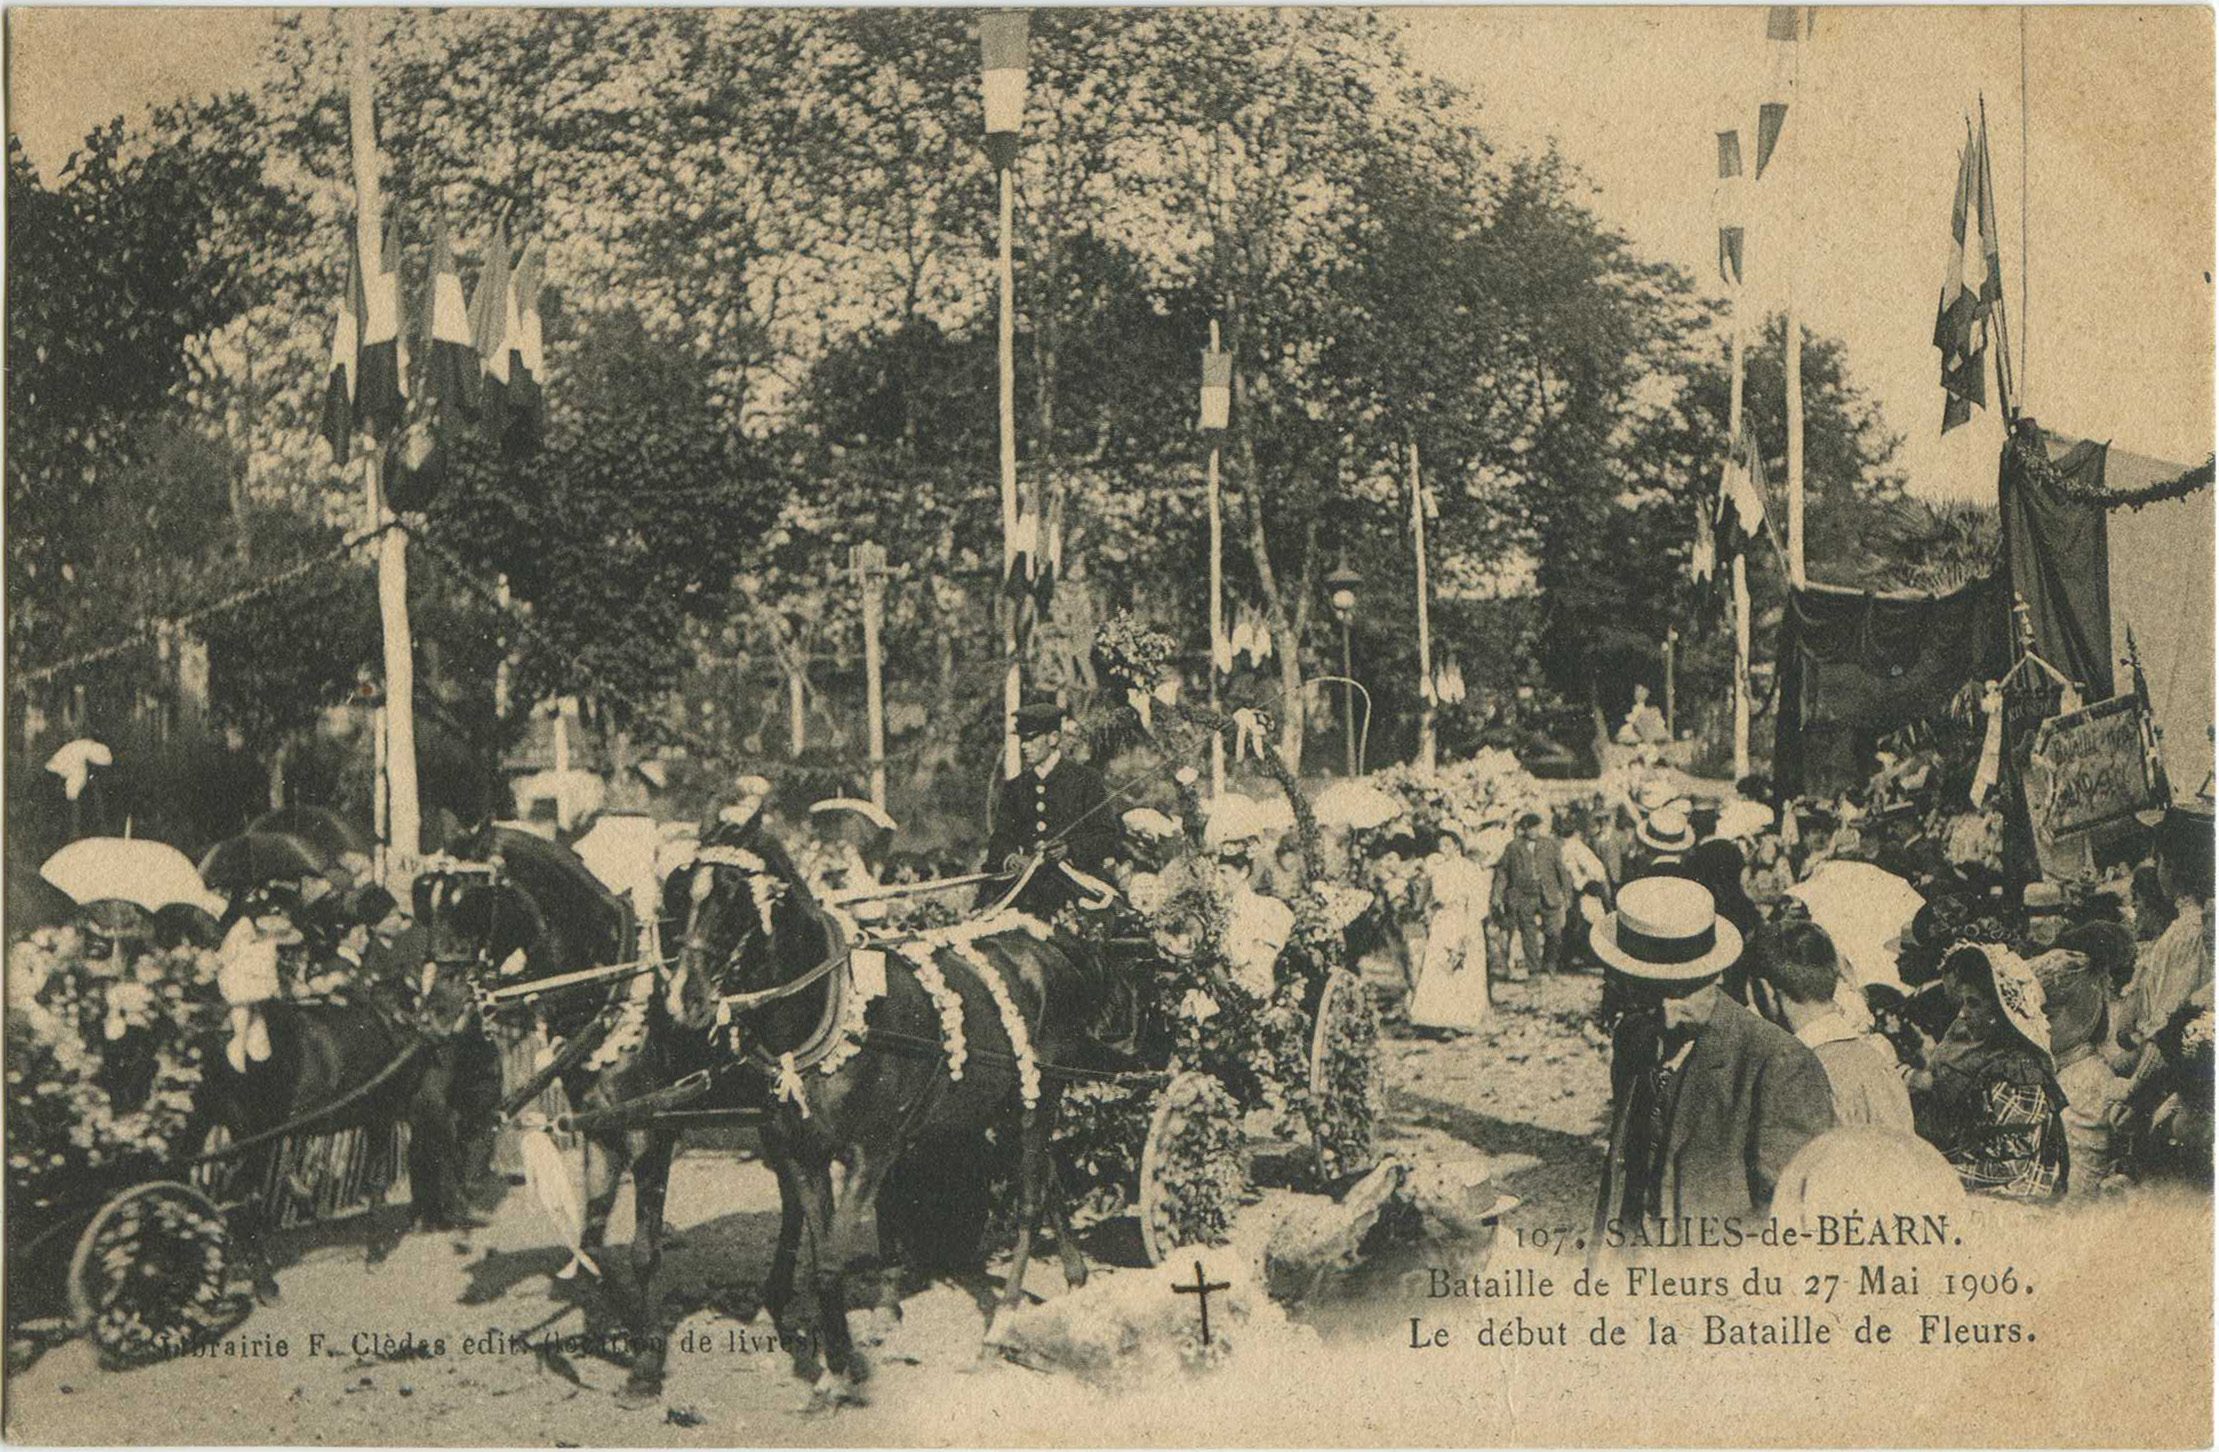 Salies-de-Béarn - Bataille de Fleurs du 27 Mai 1906. Le début de la Bataille de Fleurs.